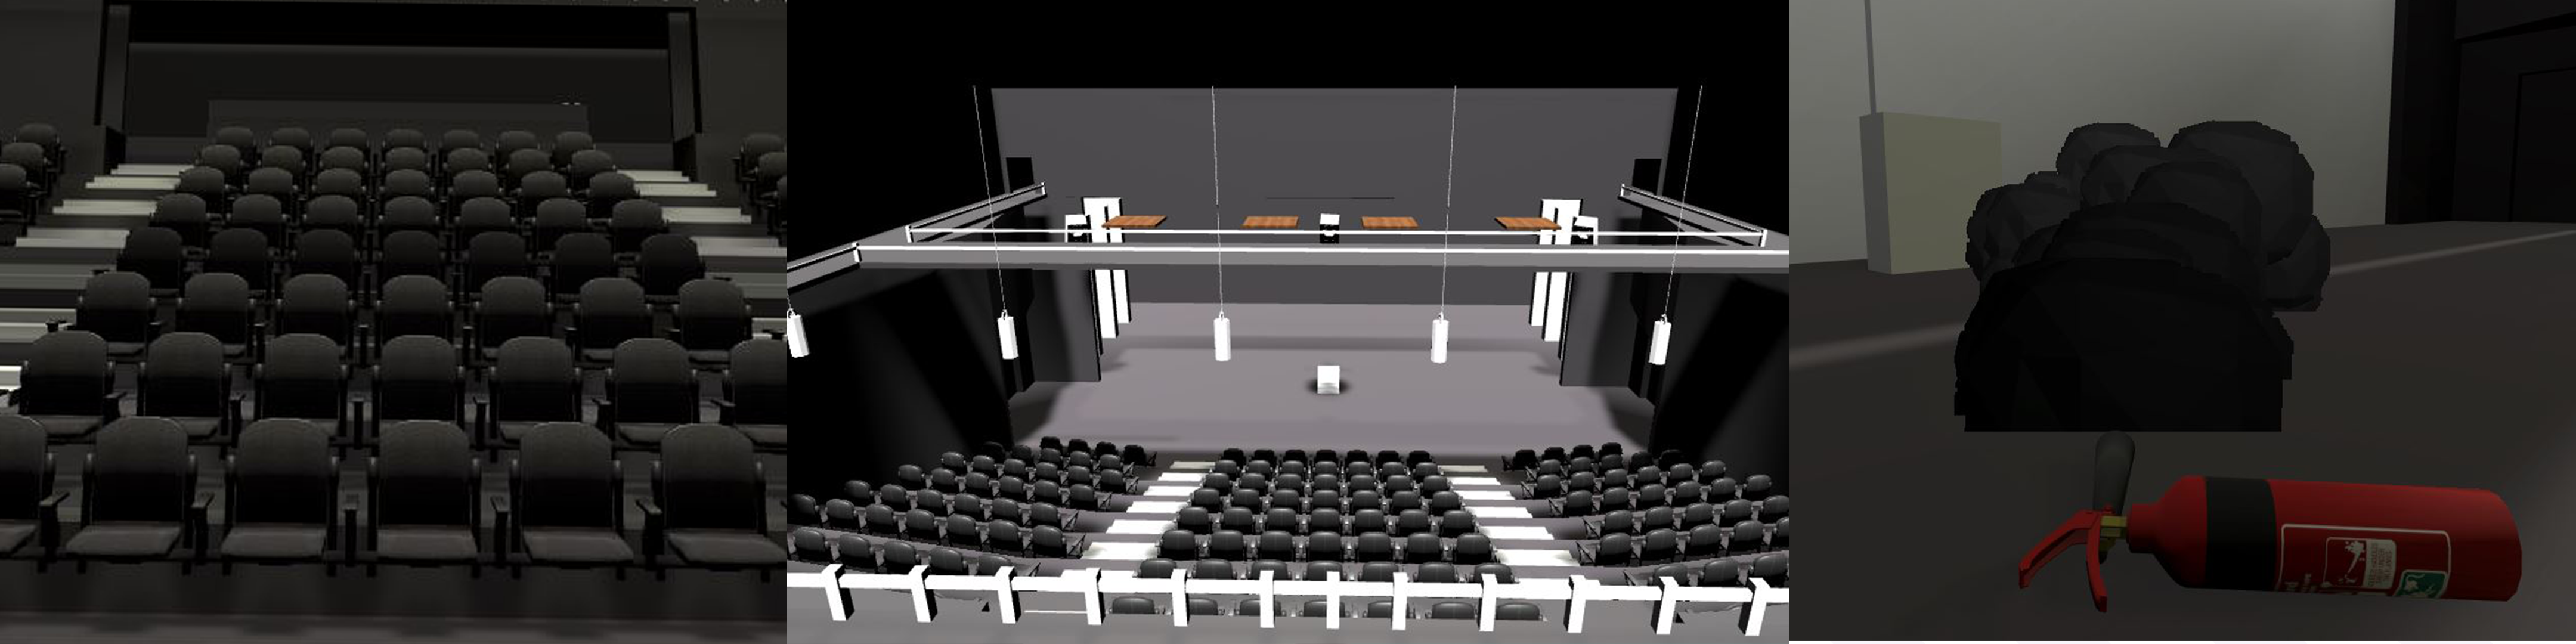 Coomera VR - Auditorium